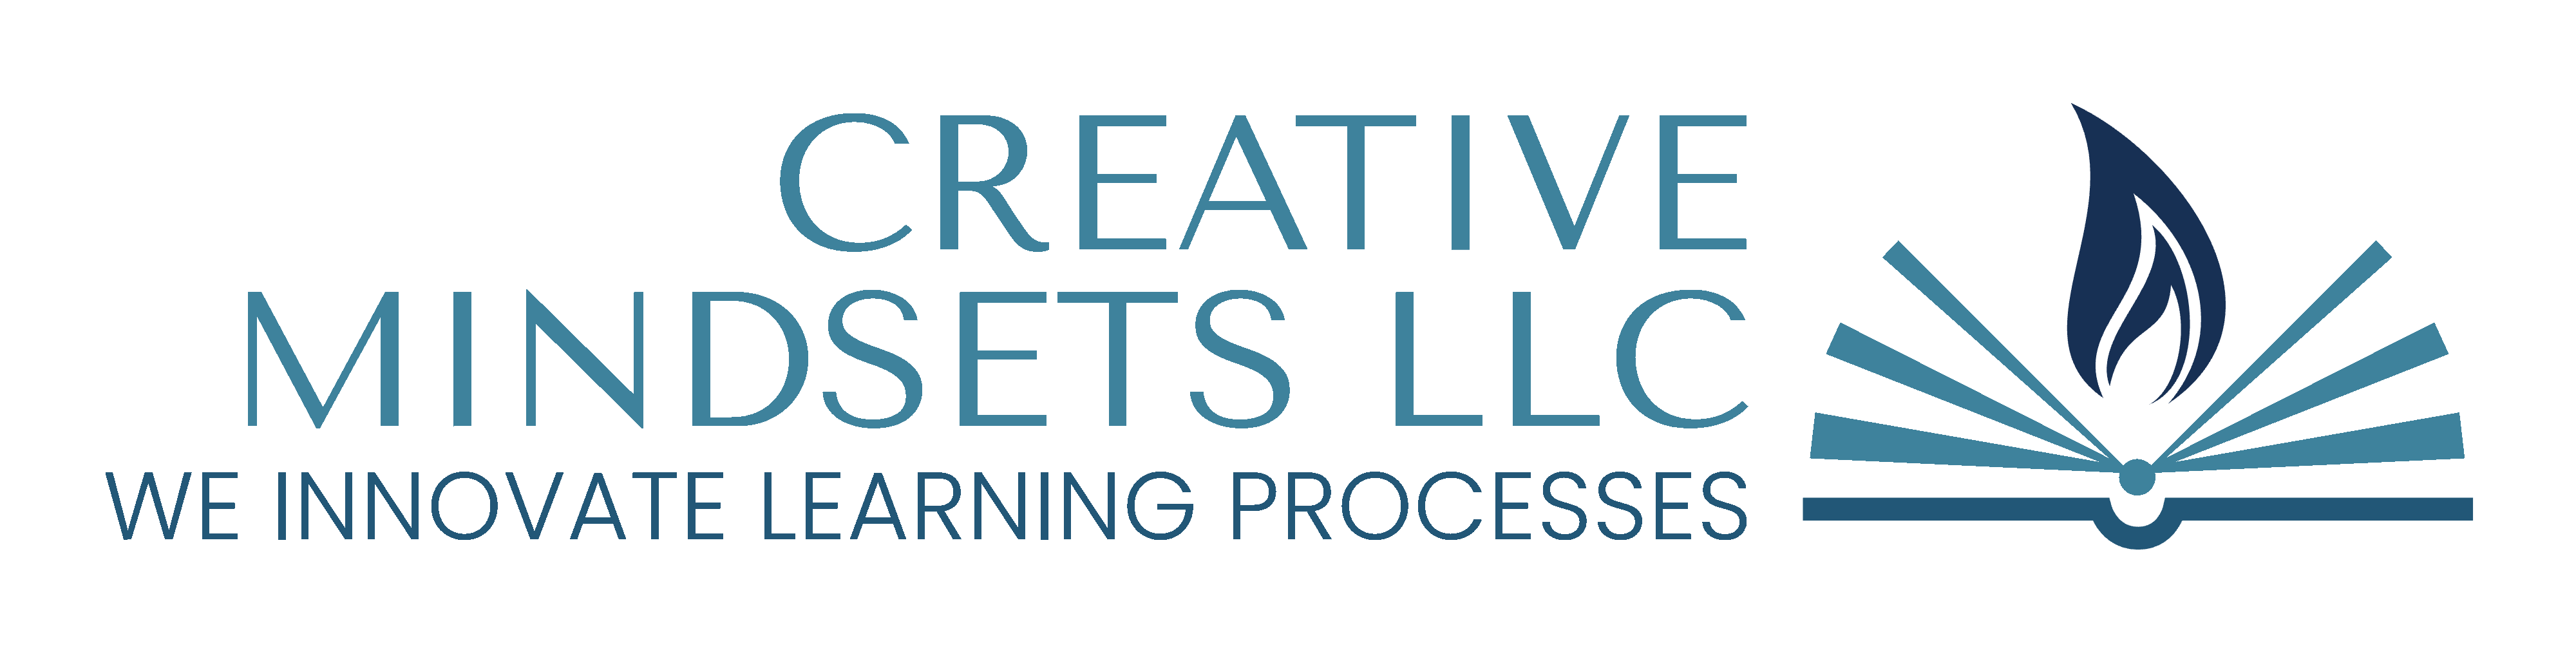 Creative Mindsets LLC